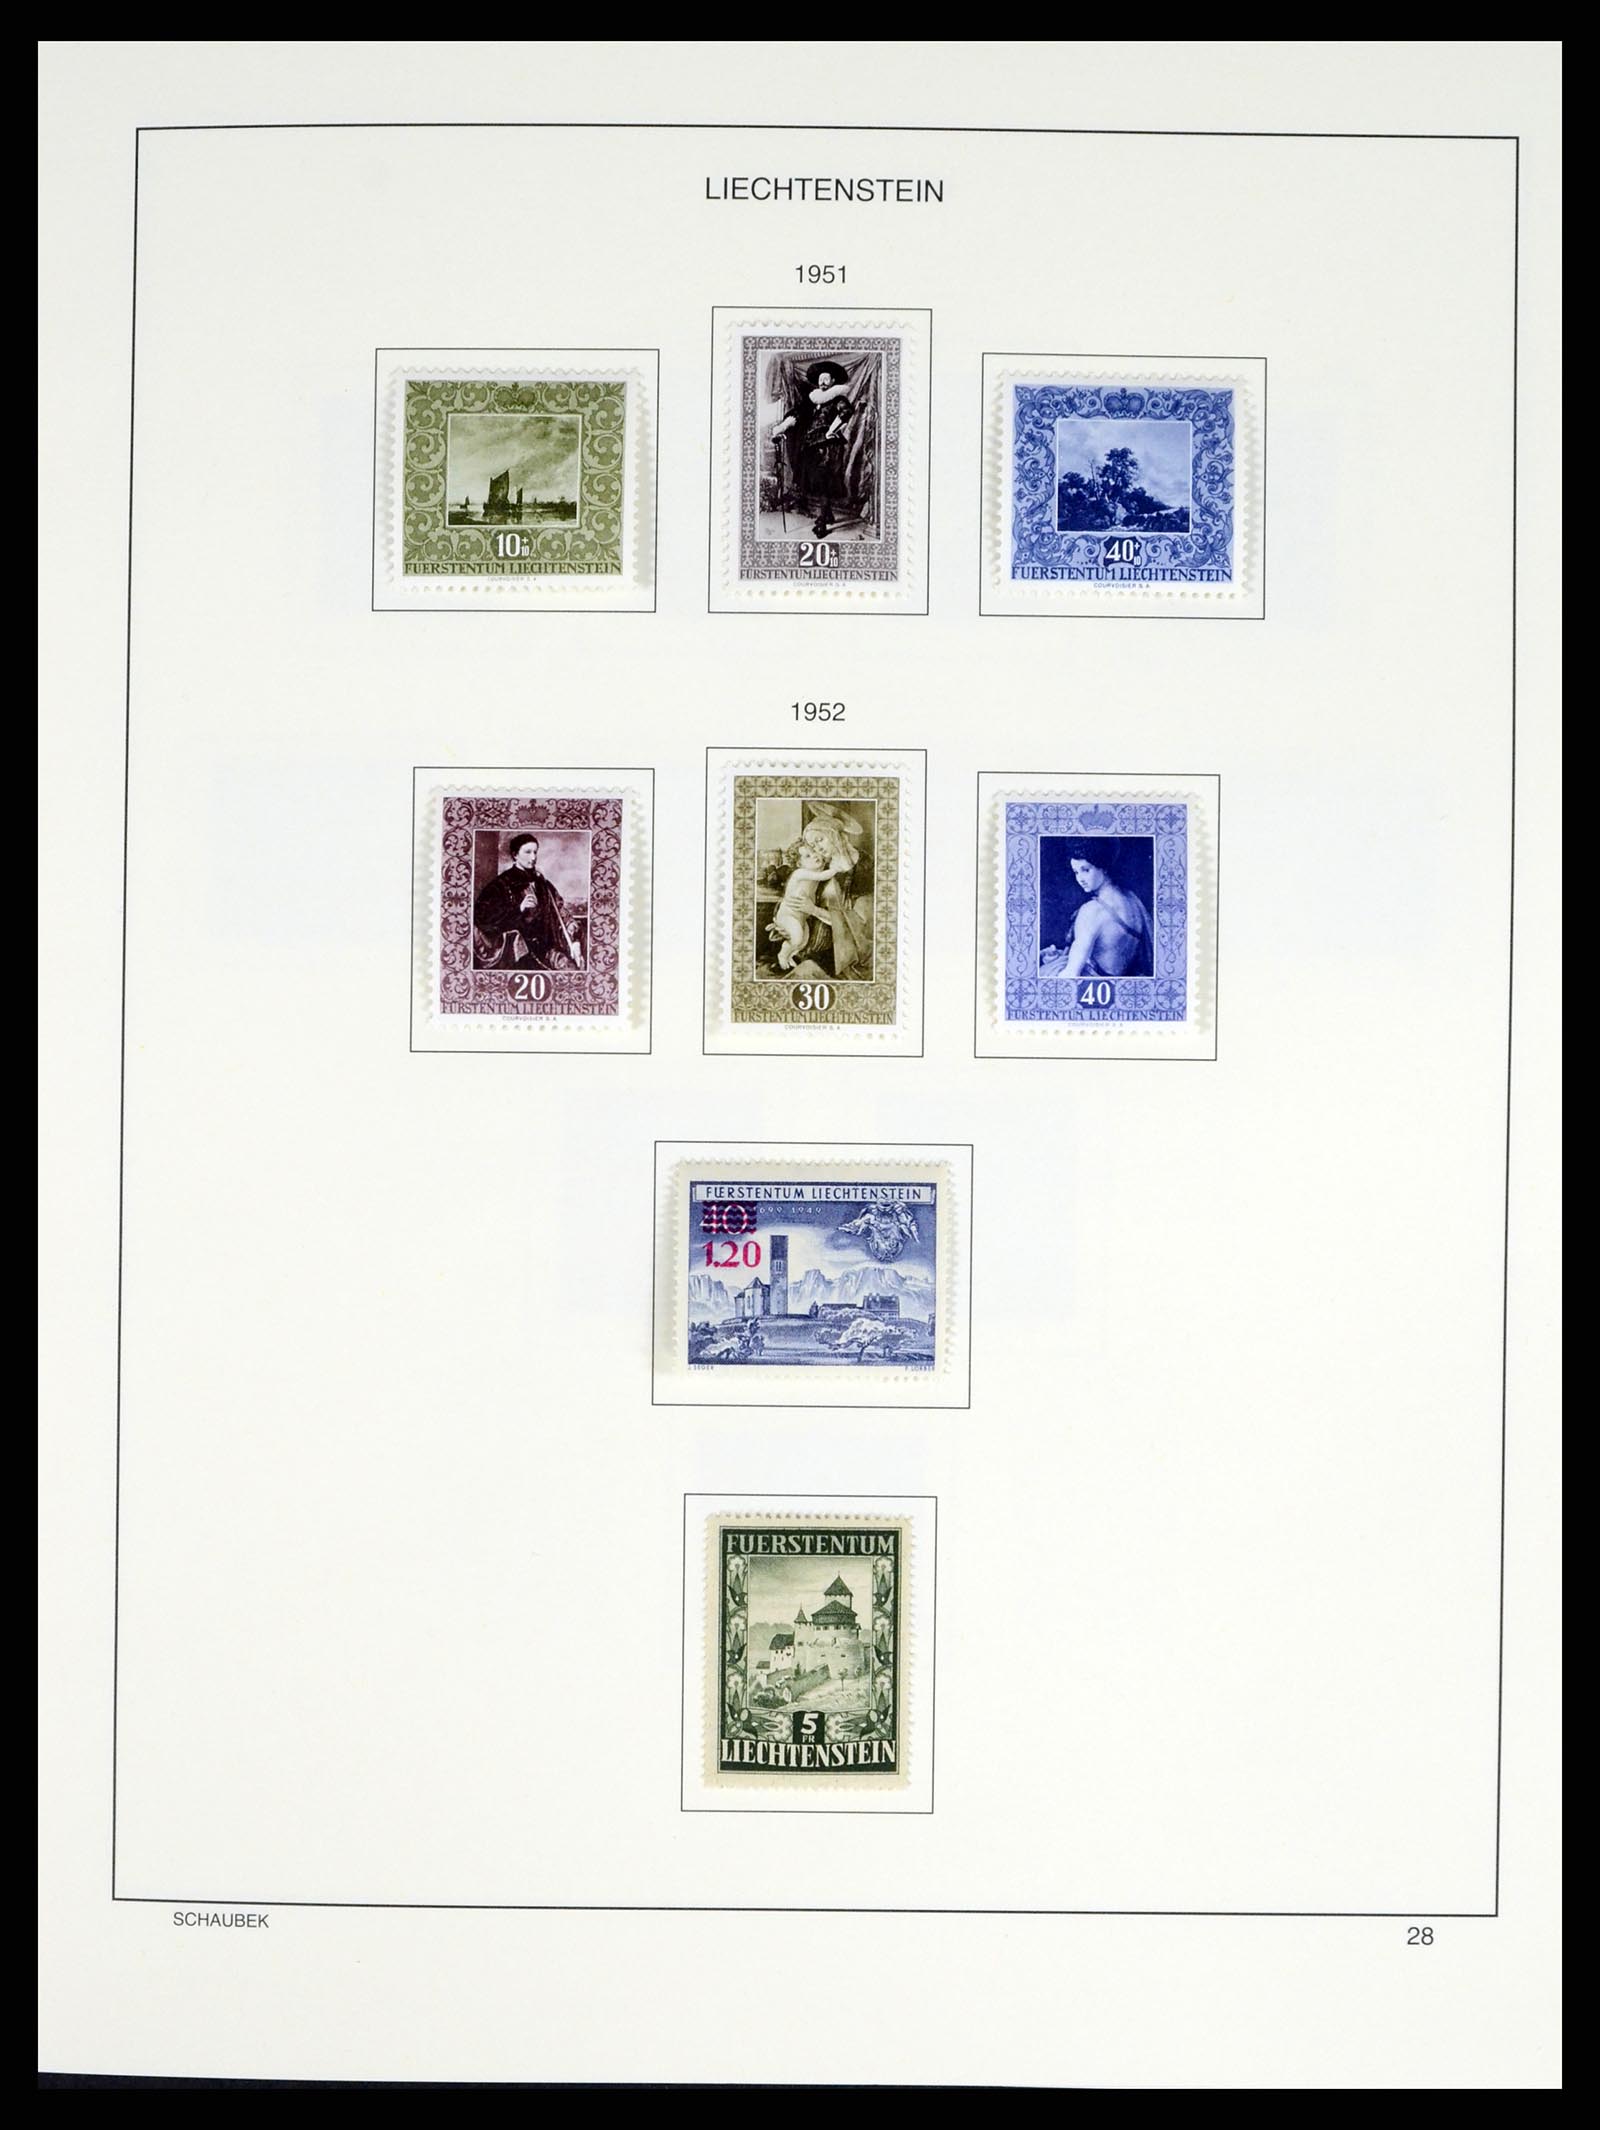 37547 033 - Stamp collection 37547 Liechtenstein 1912-2011.